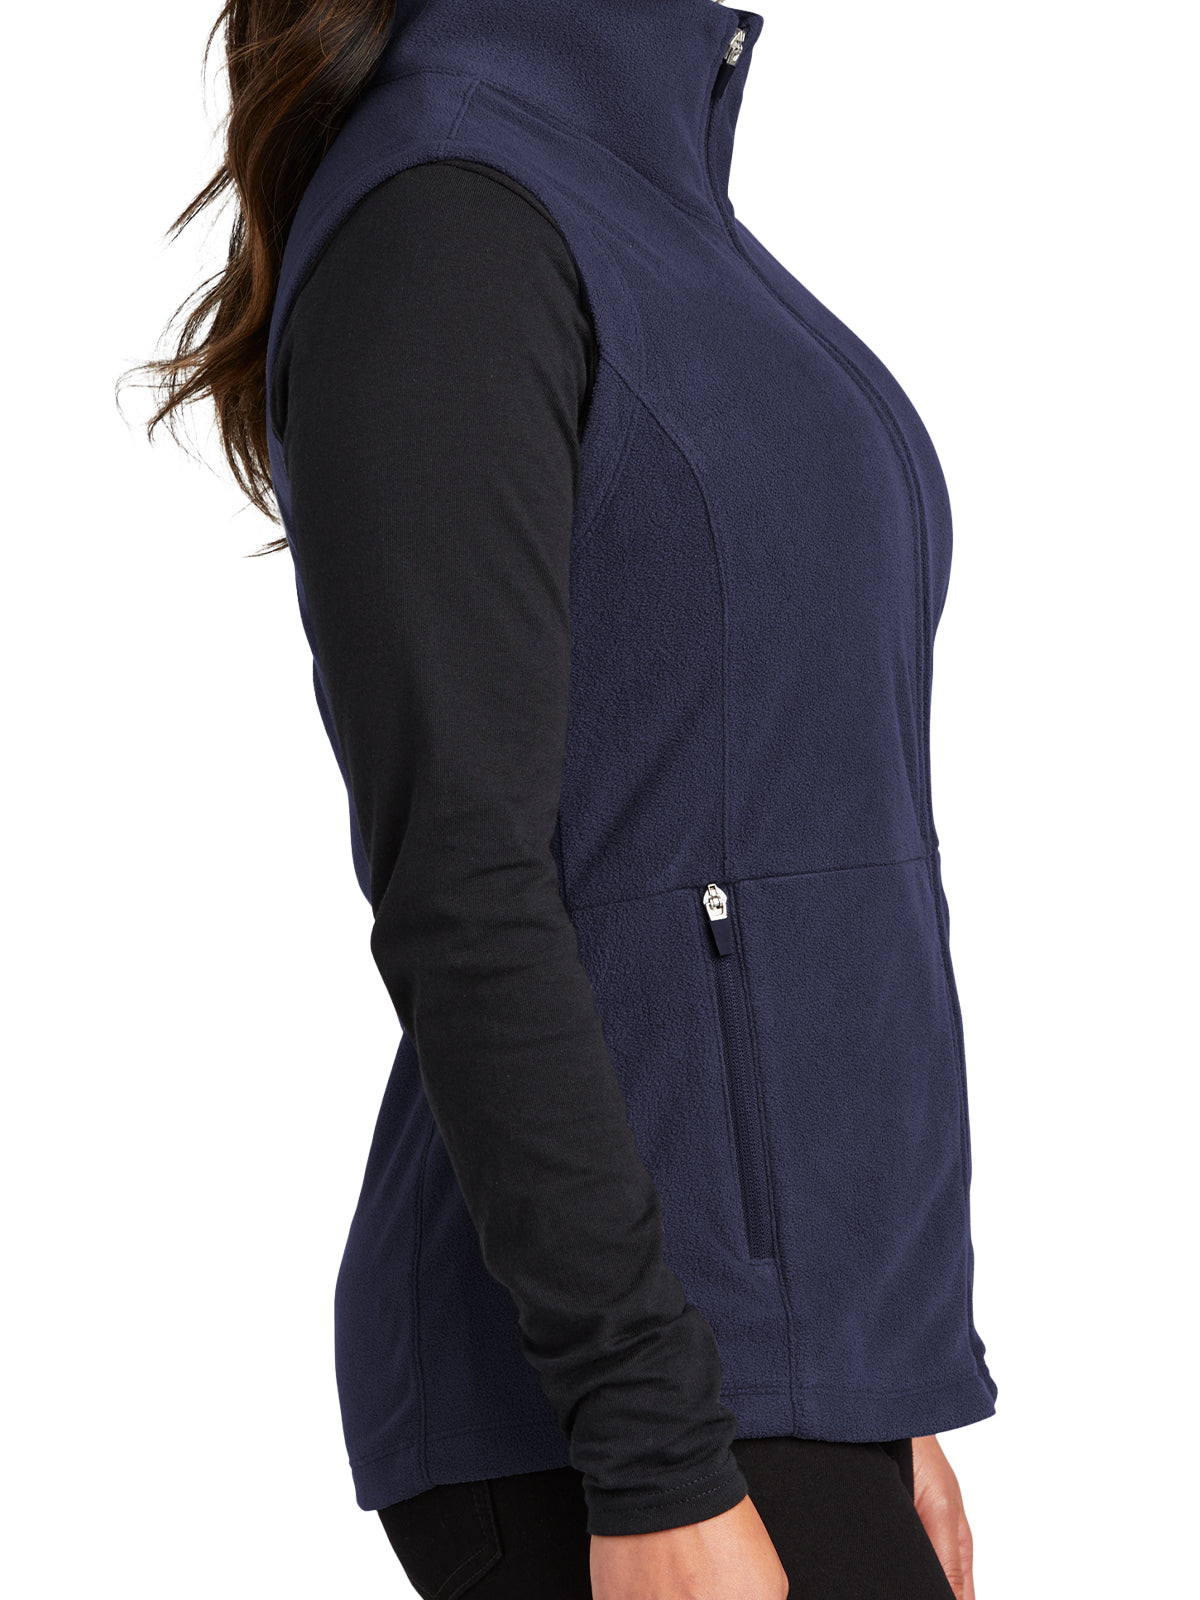 Women's Microfleece Vest